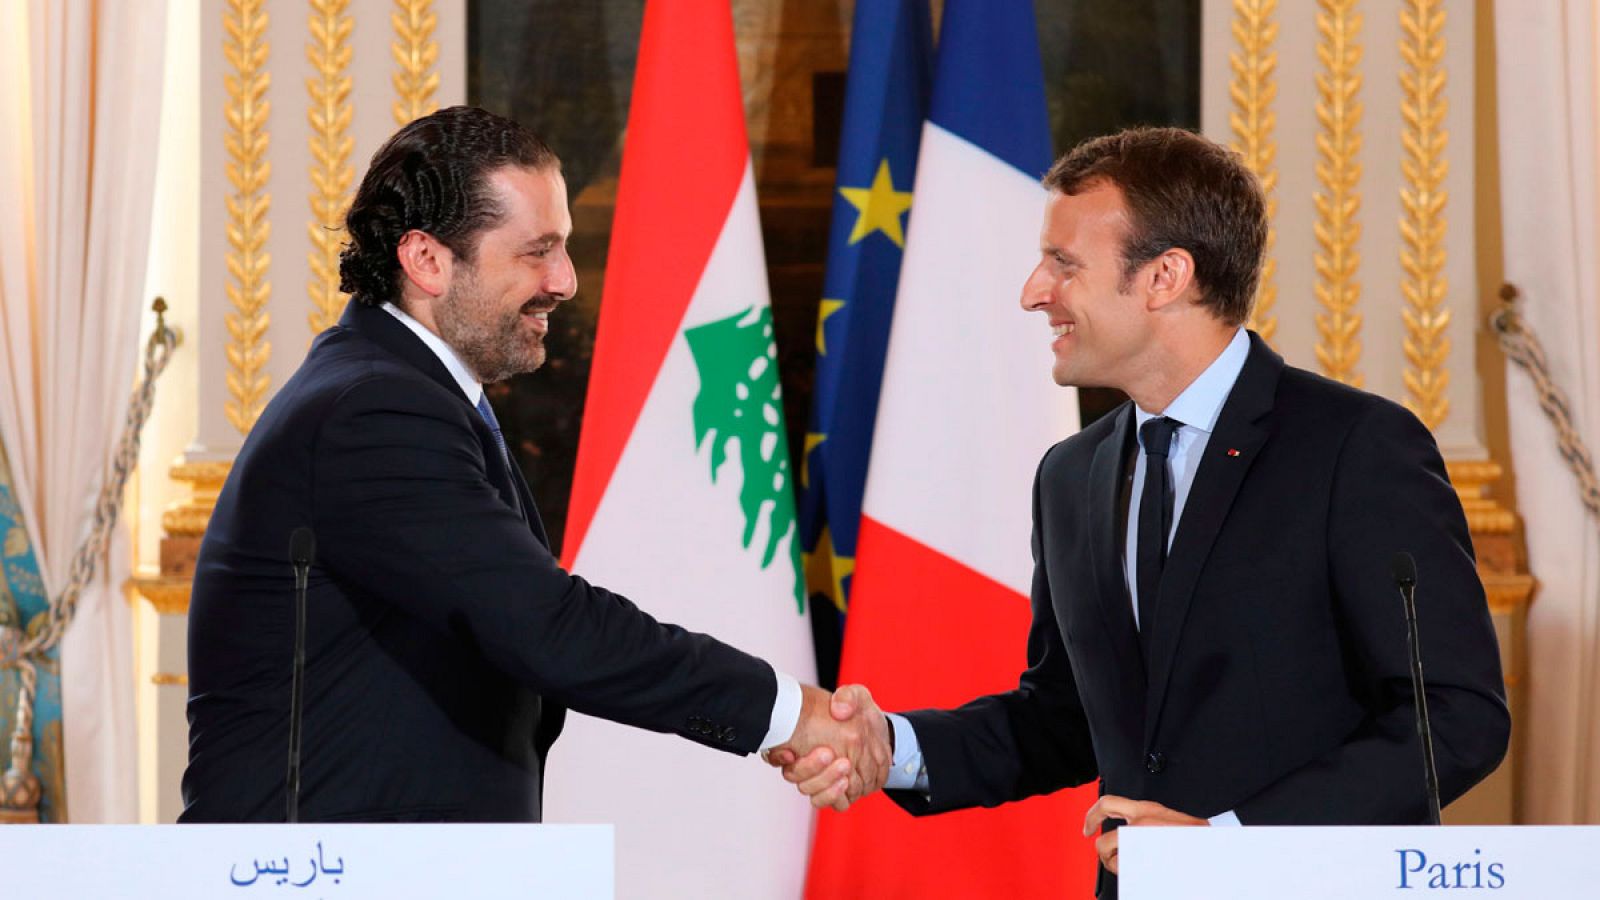 El primer ministro libanés, Saad Hariri, y el presidente francés, Emmanuel Macron, durante una visita del primero a Francia